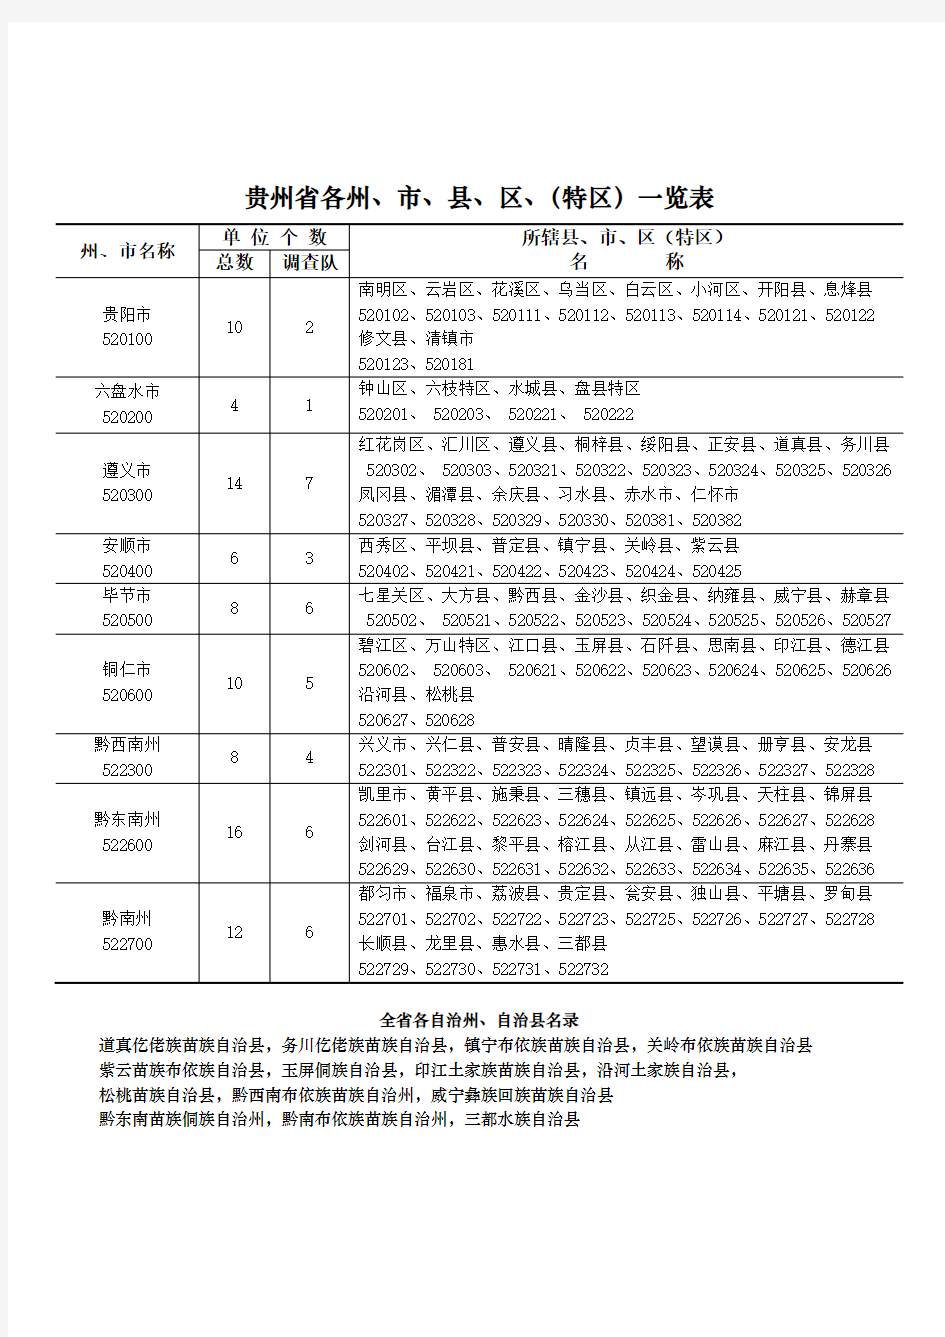 贵州省各州、市、县、区(特区)政区划代码一览表